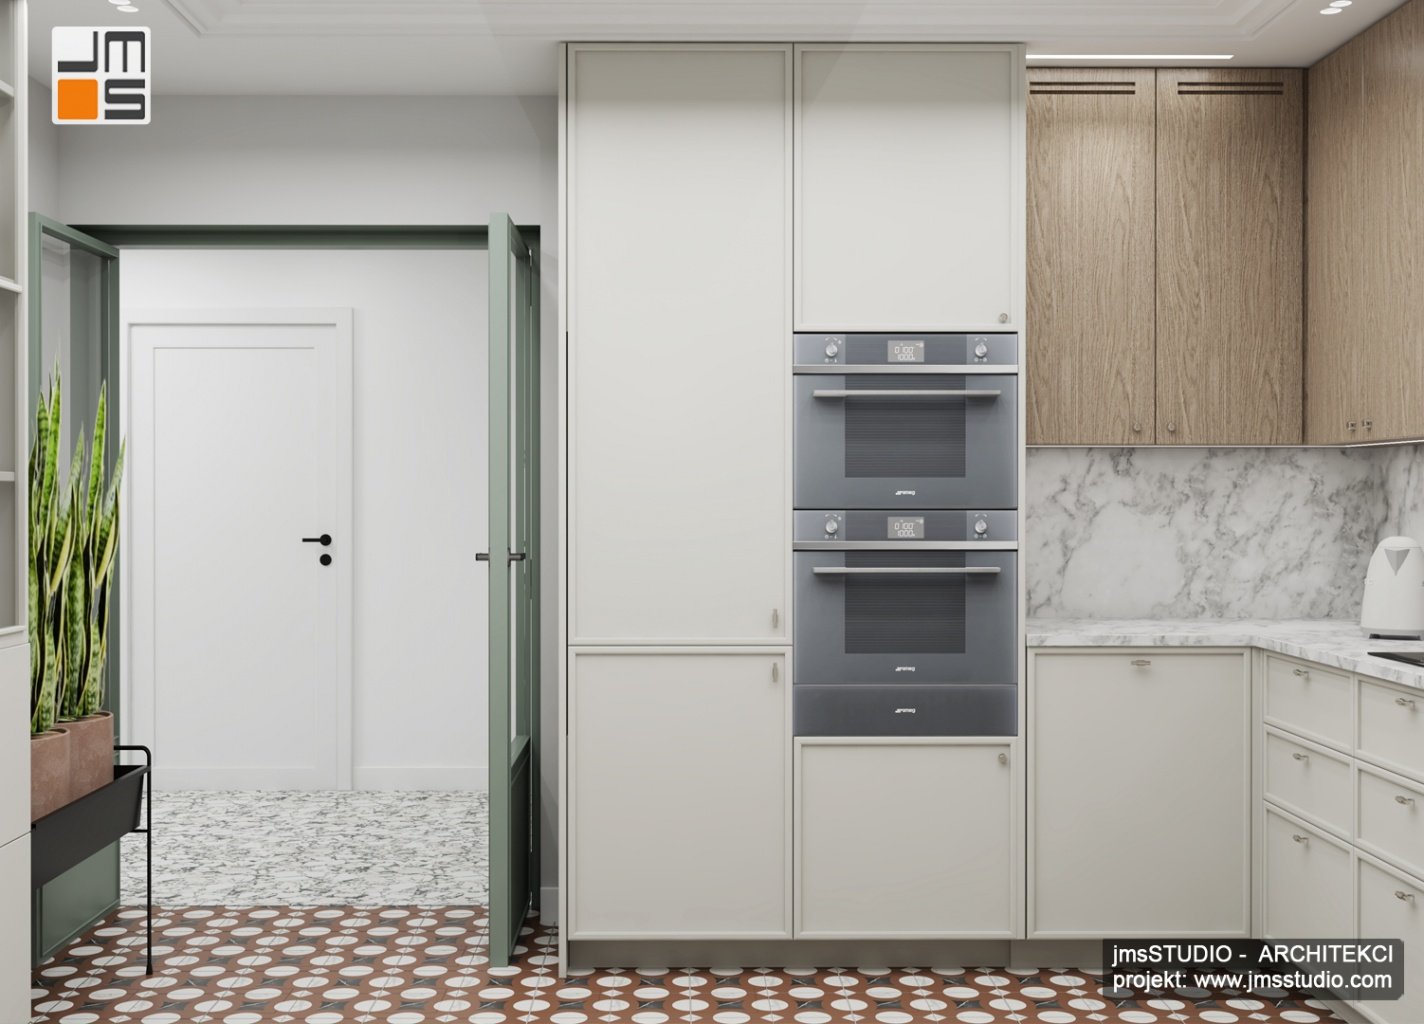 Projekt wnętrz kuchni z wysoką zabudową w jasnym pastelowym kolorze to ciekawy pomysł na optyczne powiększenie kuchni